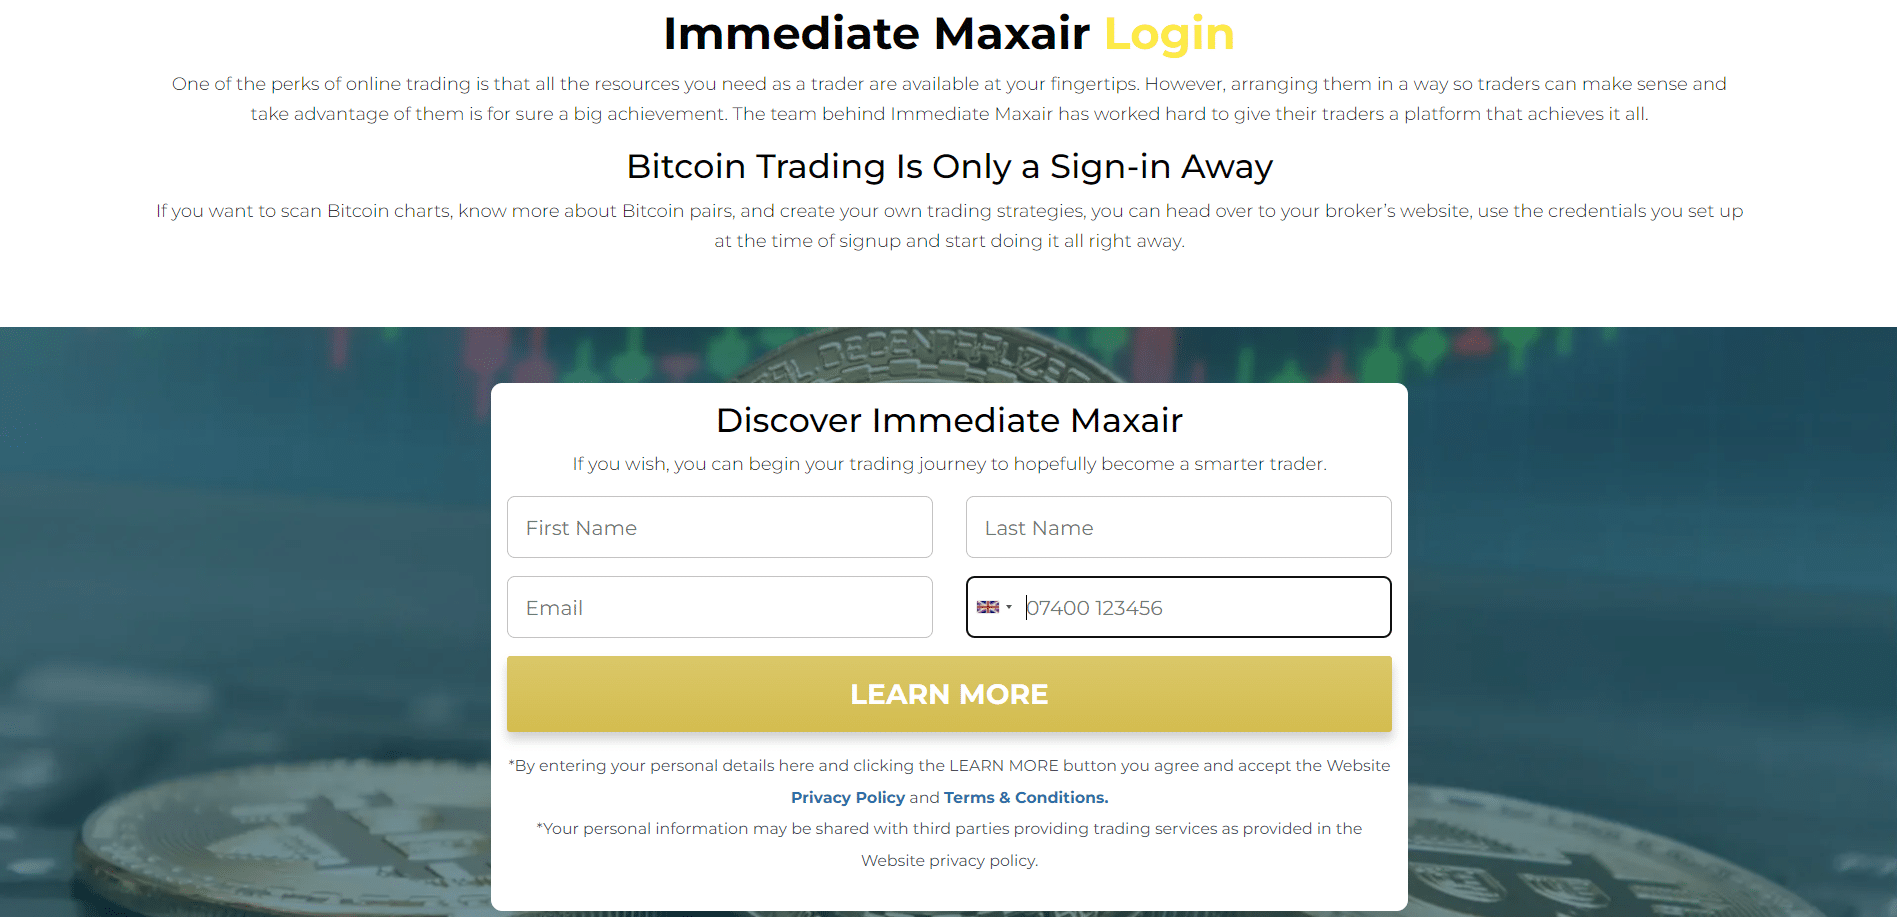 Immediate Maxair Registration